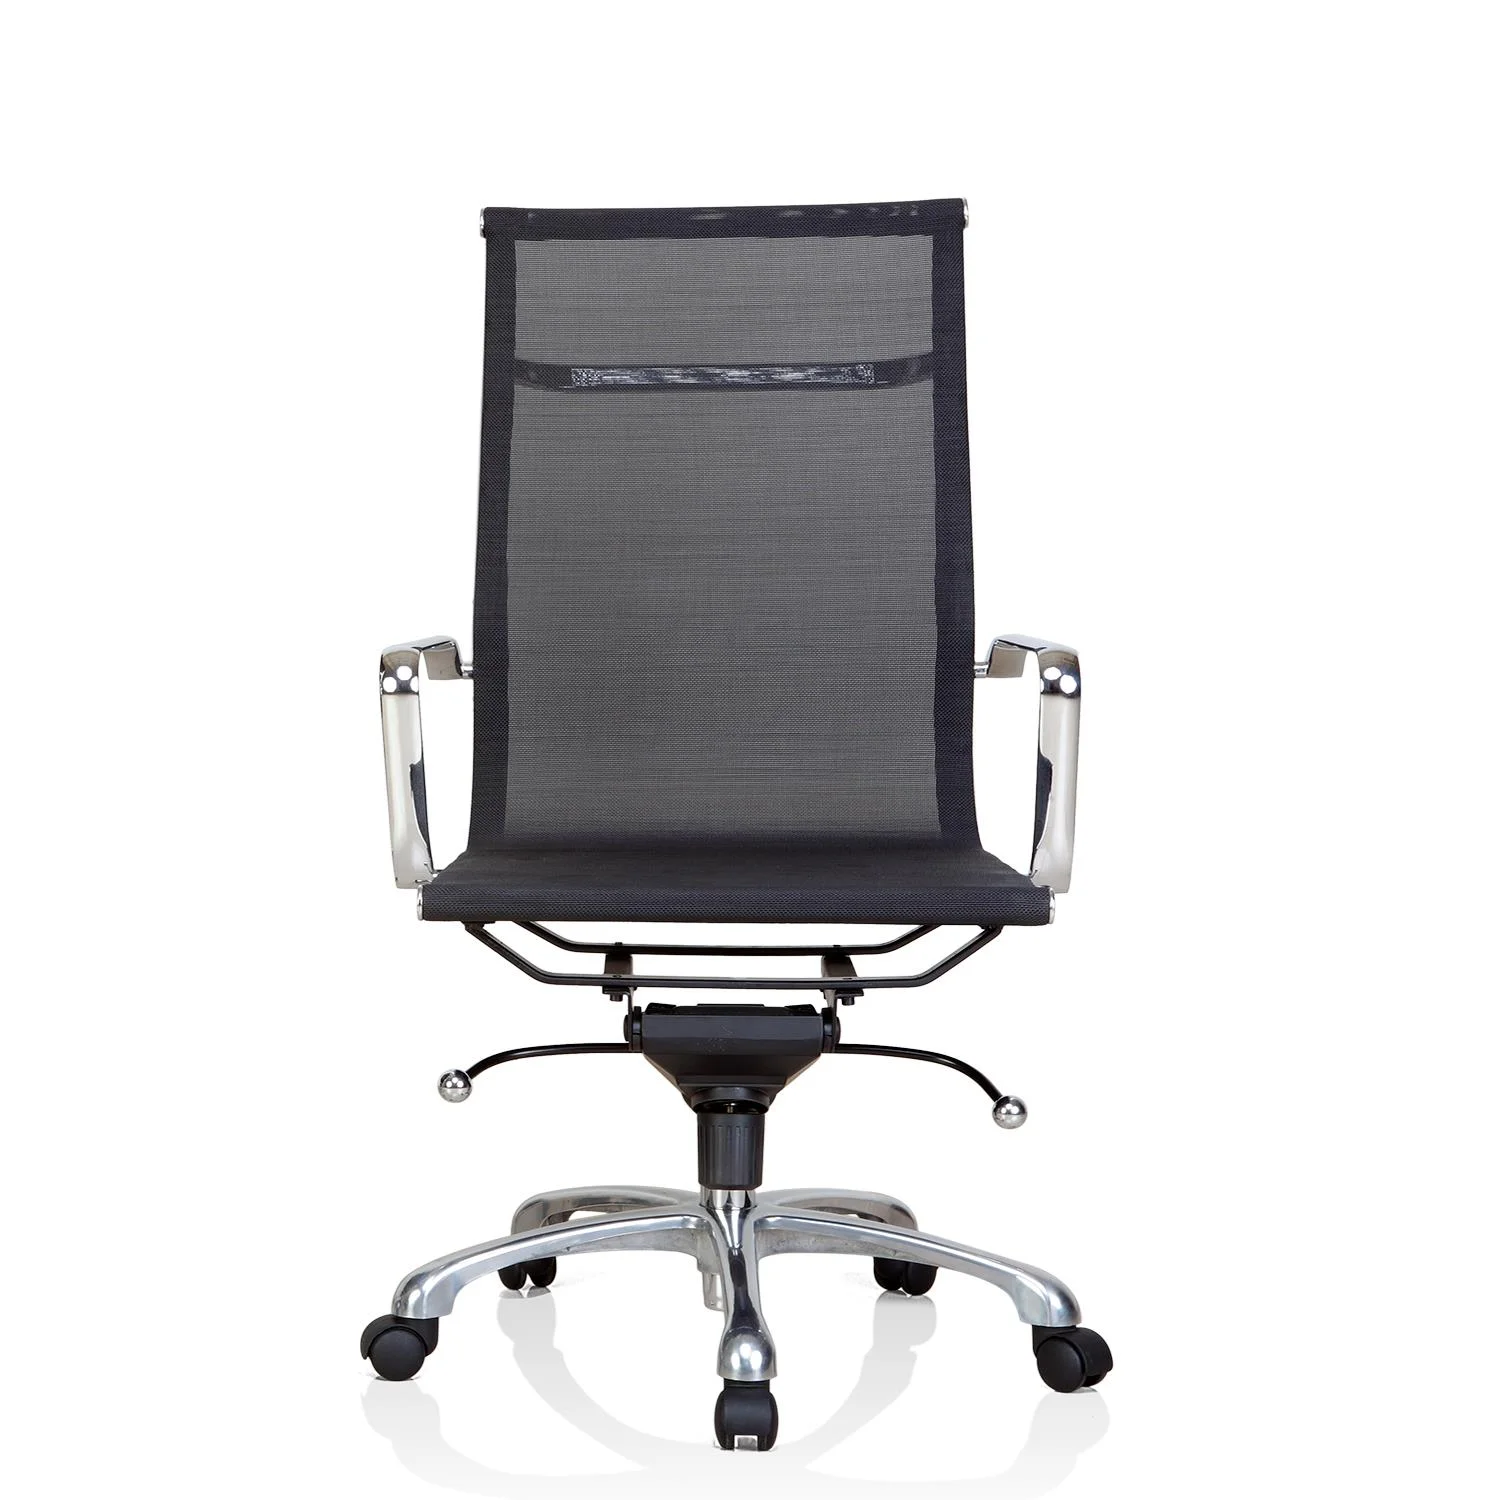 Chrome YS 6010 Chair